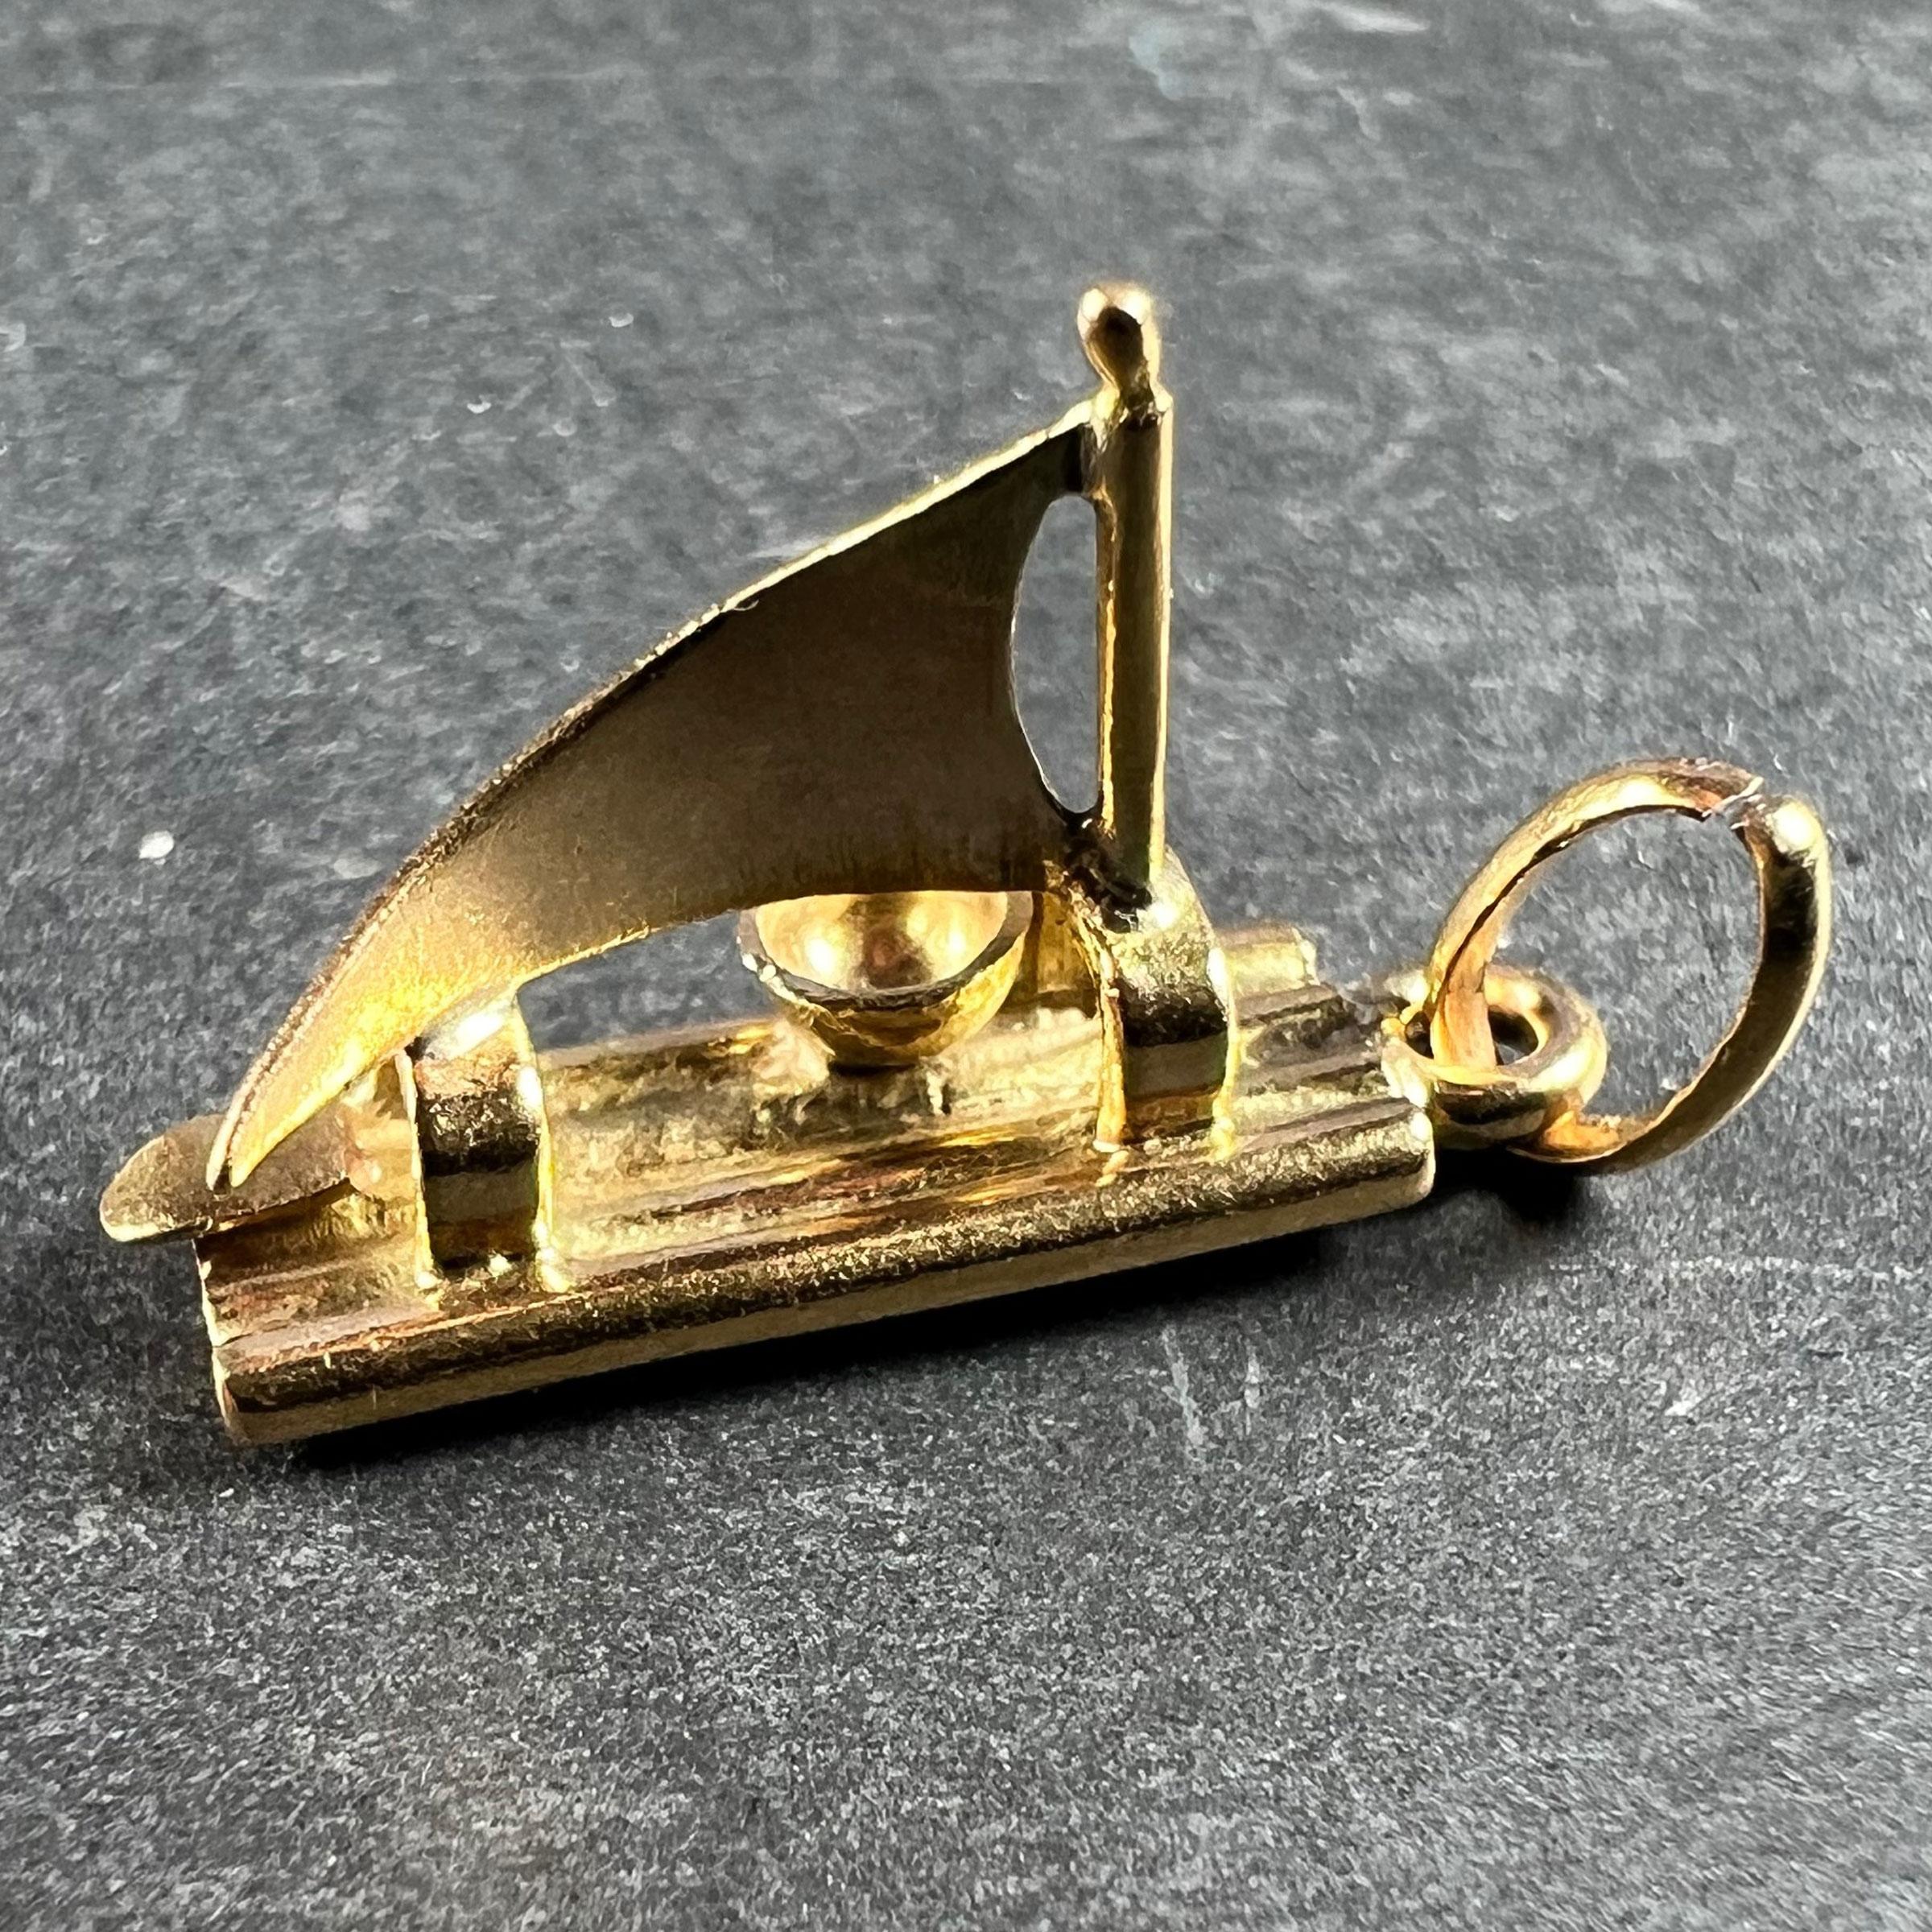 Un pendentif de charme en or jaune 18 carats (18K) conçu comme un radeau avec une voile et un gouvernail. Non marqué mais testé pour l'or 18 carats. 

Dimensions : 1.8 x 0,55 x 1,1 cm
Poids : 1,78 grammes
